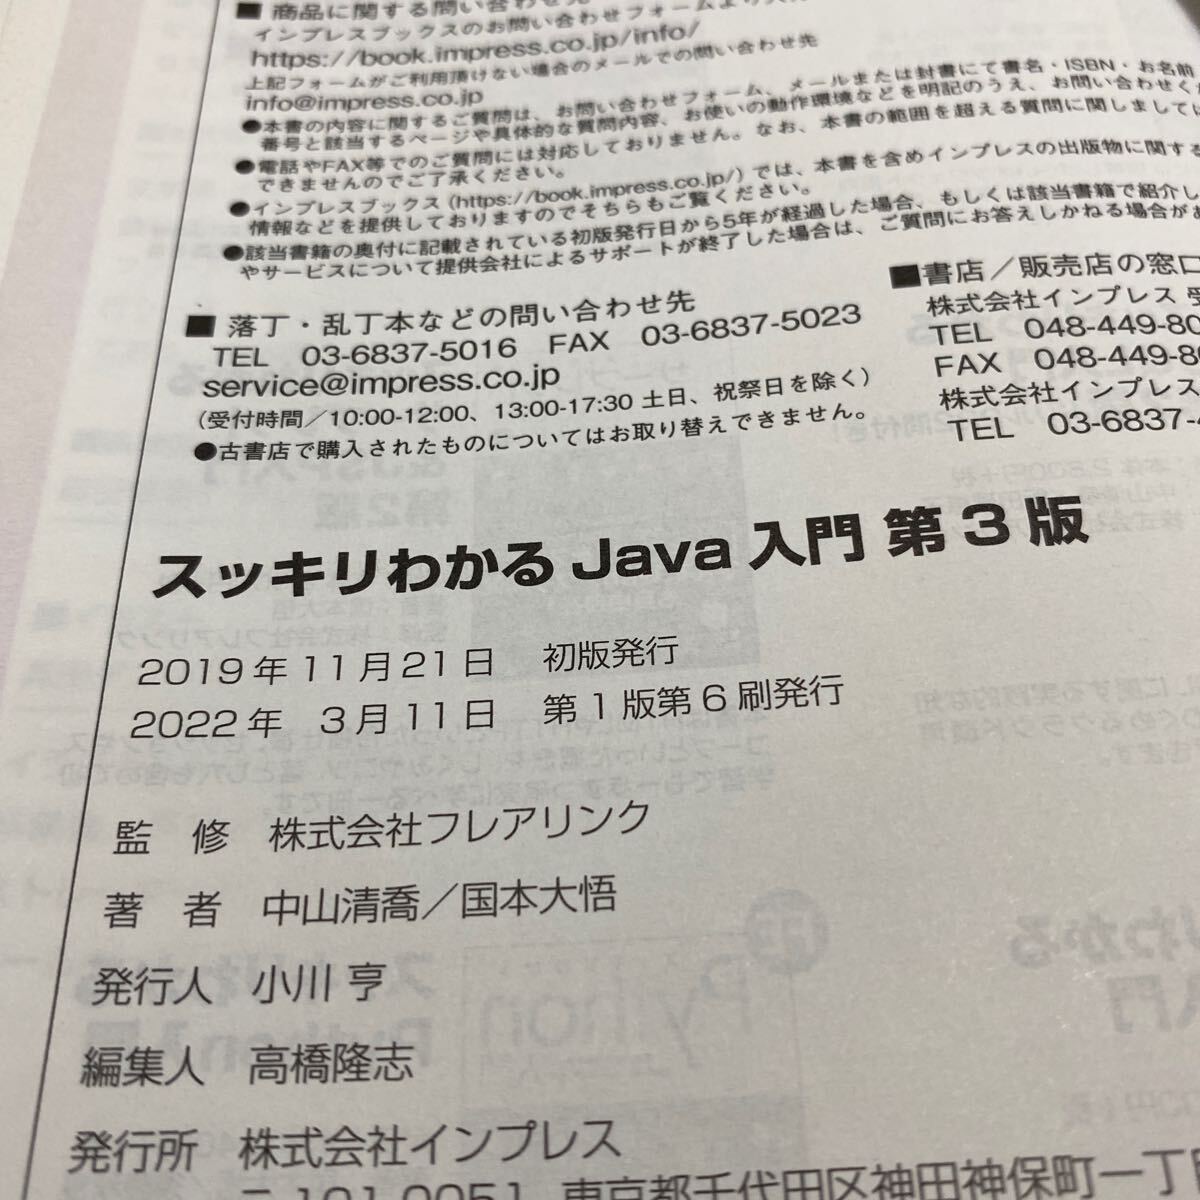  аккуратный понимать Java введение ( no. 3 версия )* практика сборник ( no. 3 версия ) итого 2 шт. старая книга с дефектом 1 шт. вписывание есть Impress Nakayama Kiyoshi . flair ссылка 